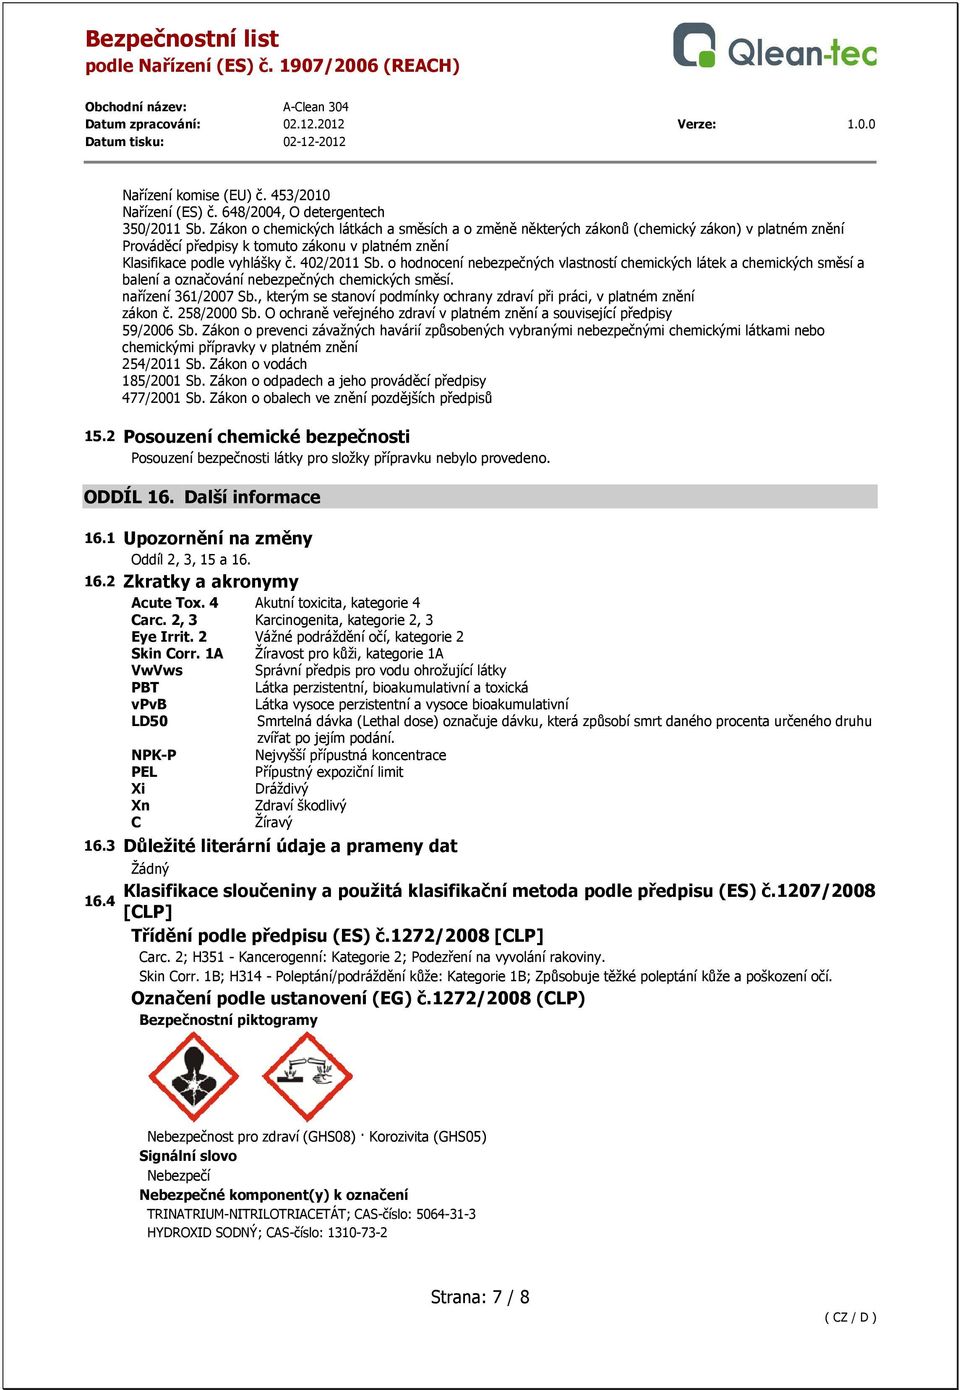 o hodnocení nebezpečných vlastností chemických látek a chemických směsí a balení a označování nebezpečných chemických směsí. nařízení 361/2007 Sb.